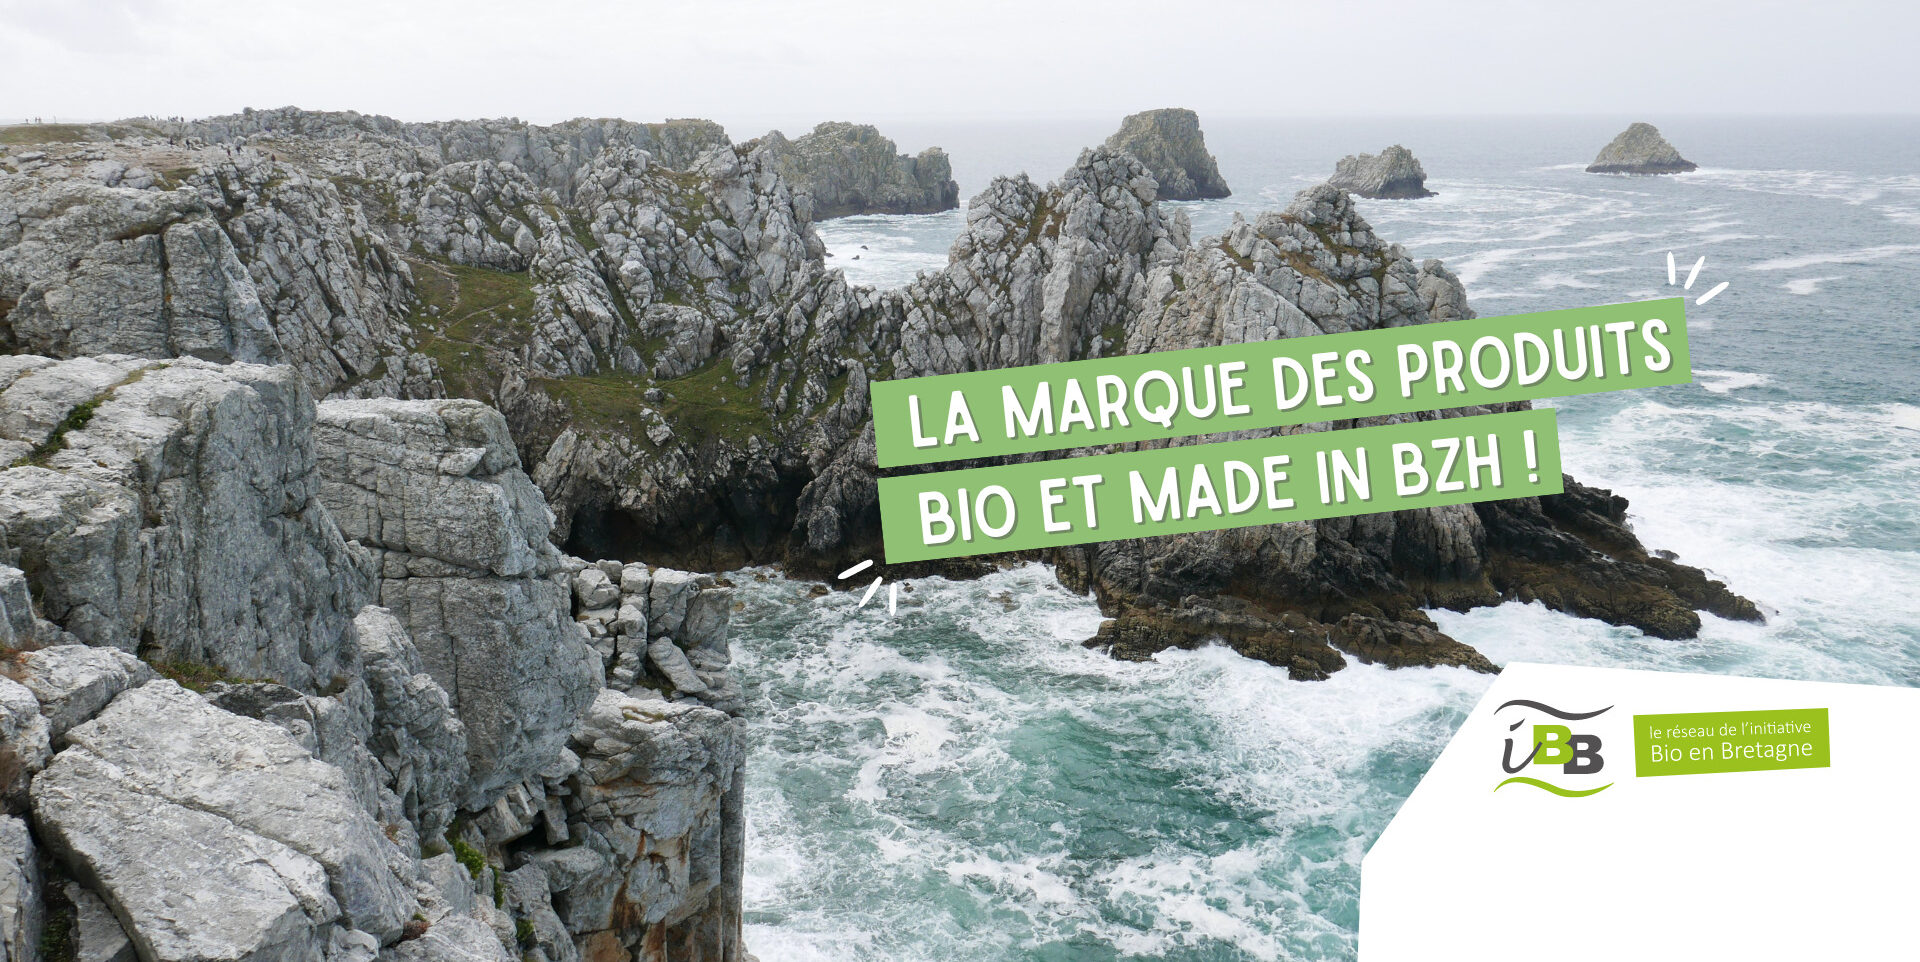 Infographie slogan Be Reizh "La Marque des produits bio et made in BZH" sur photographie mer Bretagne